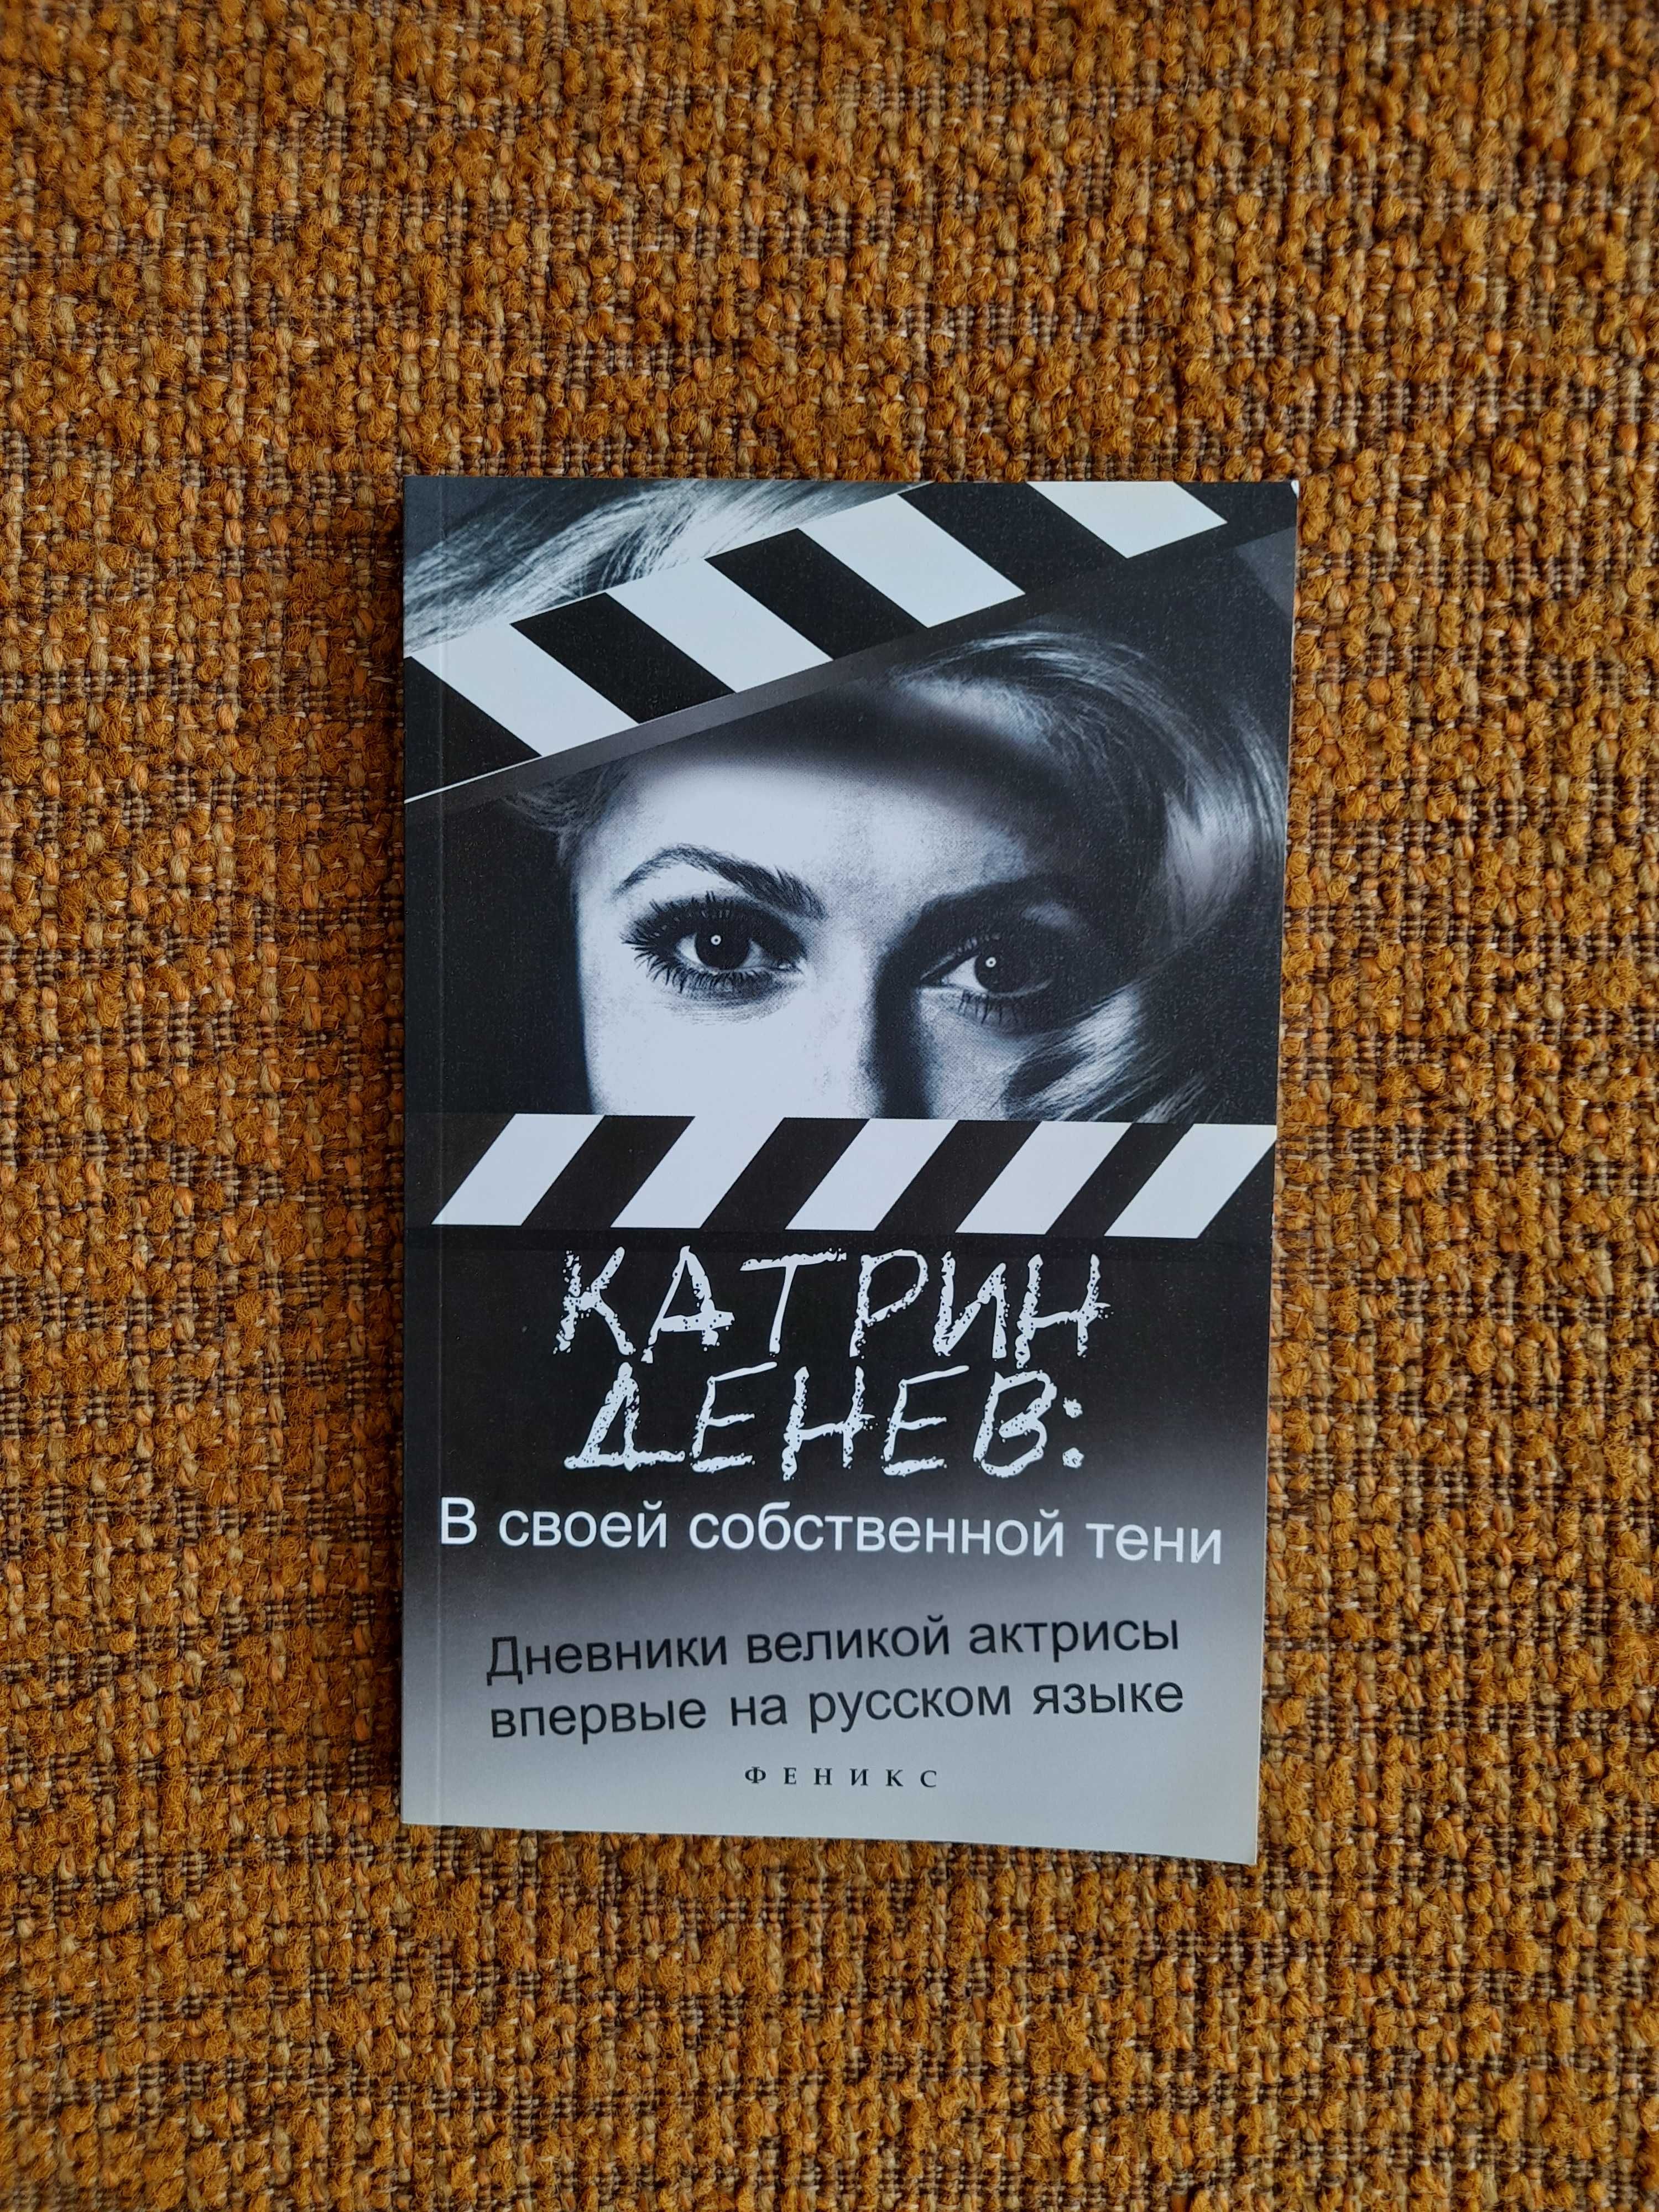 Продам книгу актрисы Катрин Денёв " В своей собственной тени "